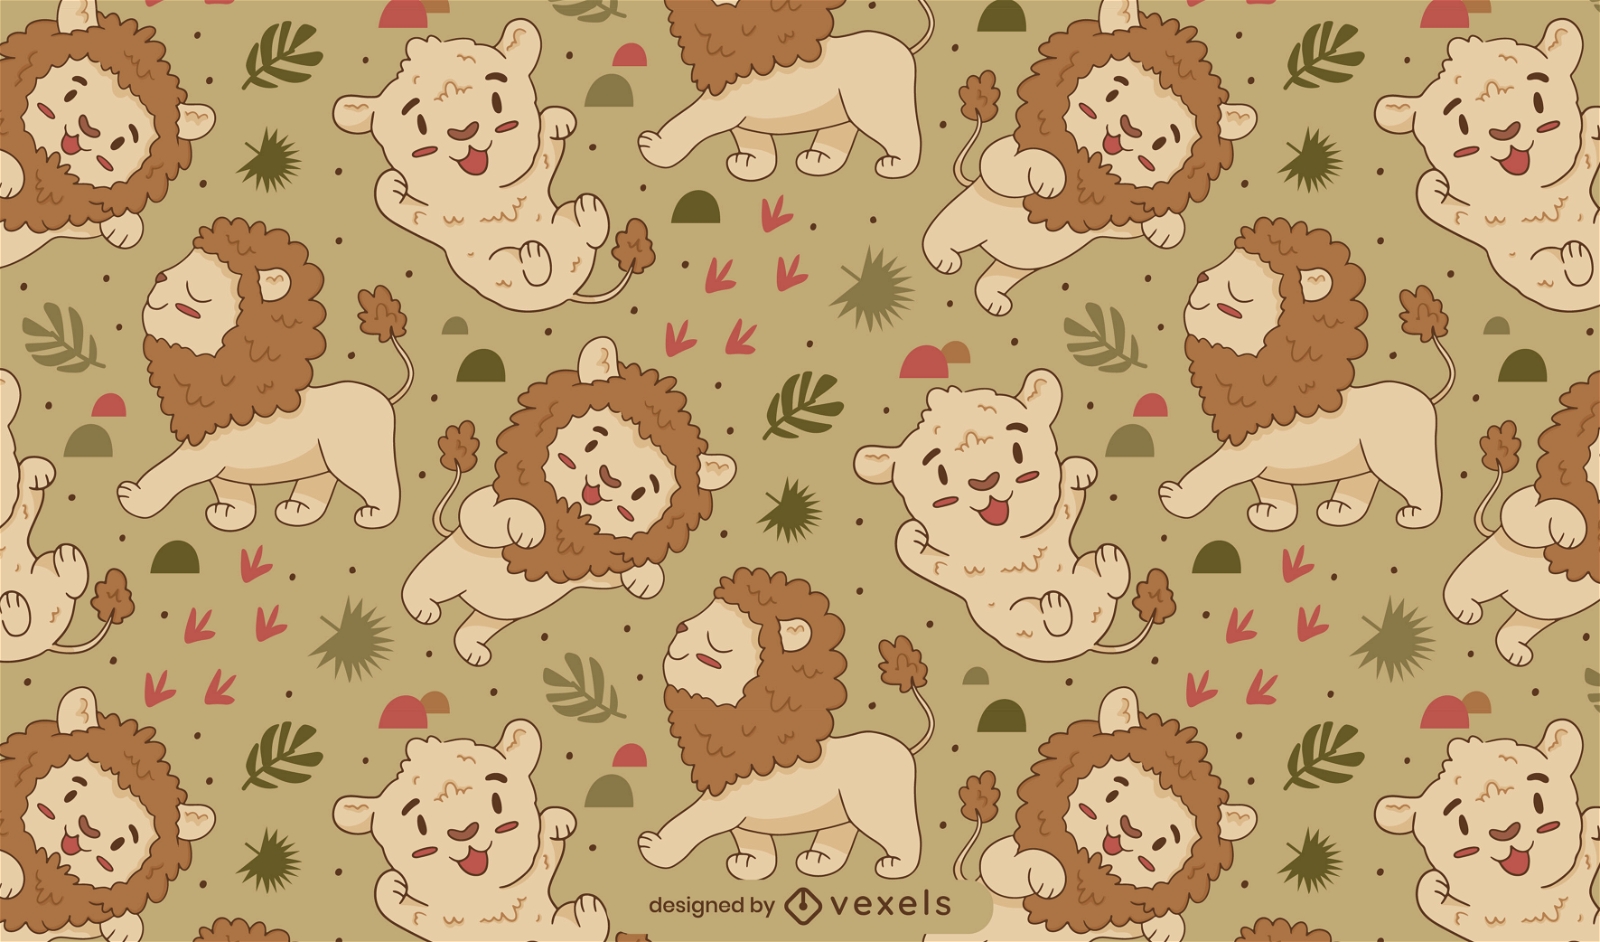 Design de padrão adorável de leões e tigres de bebê